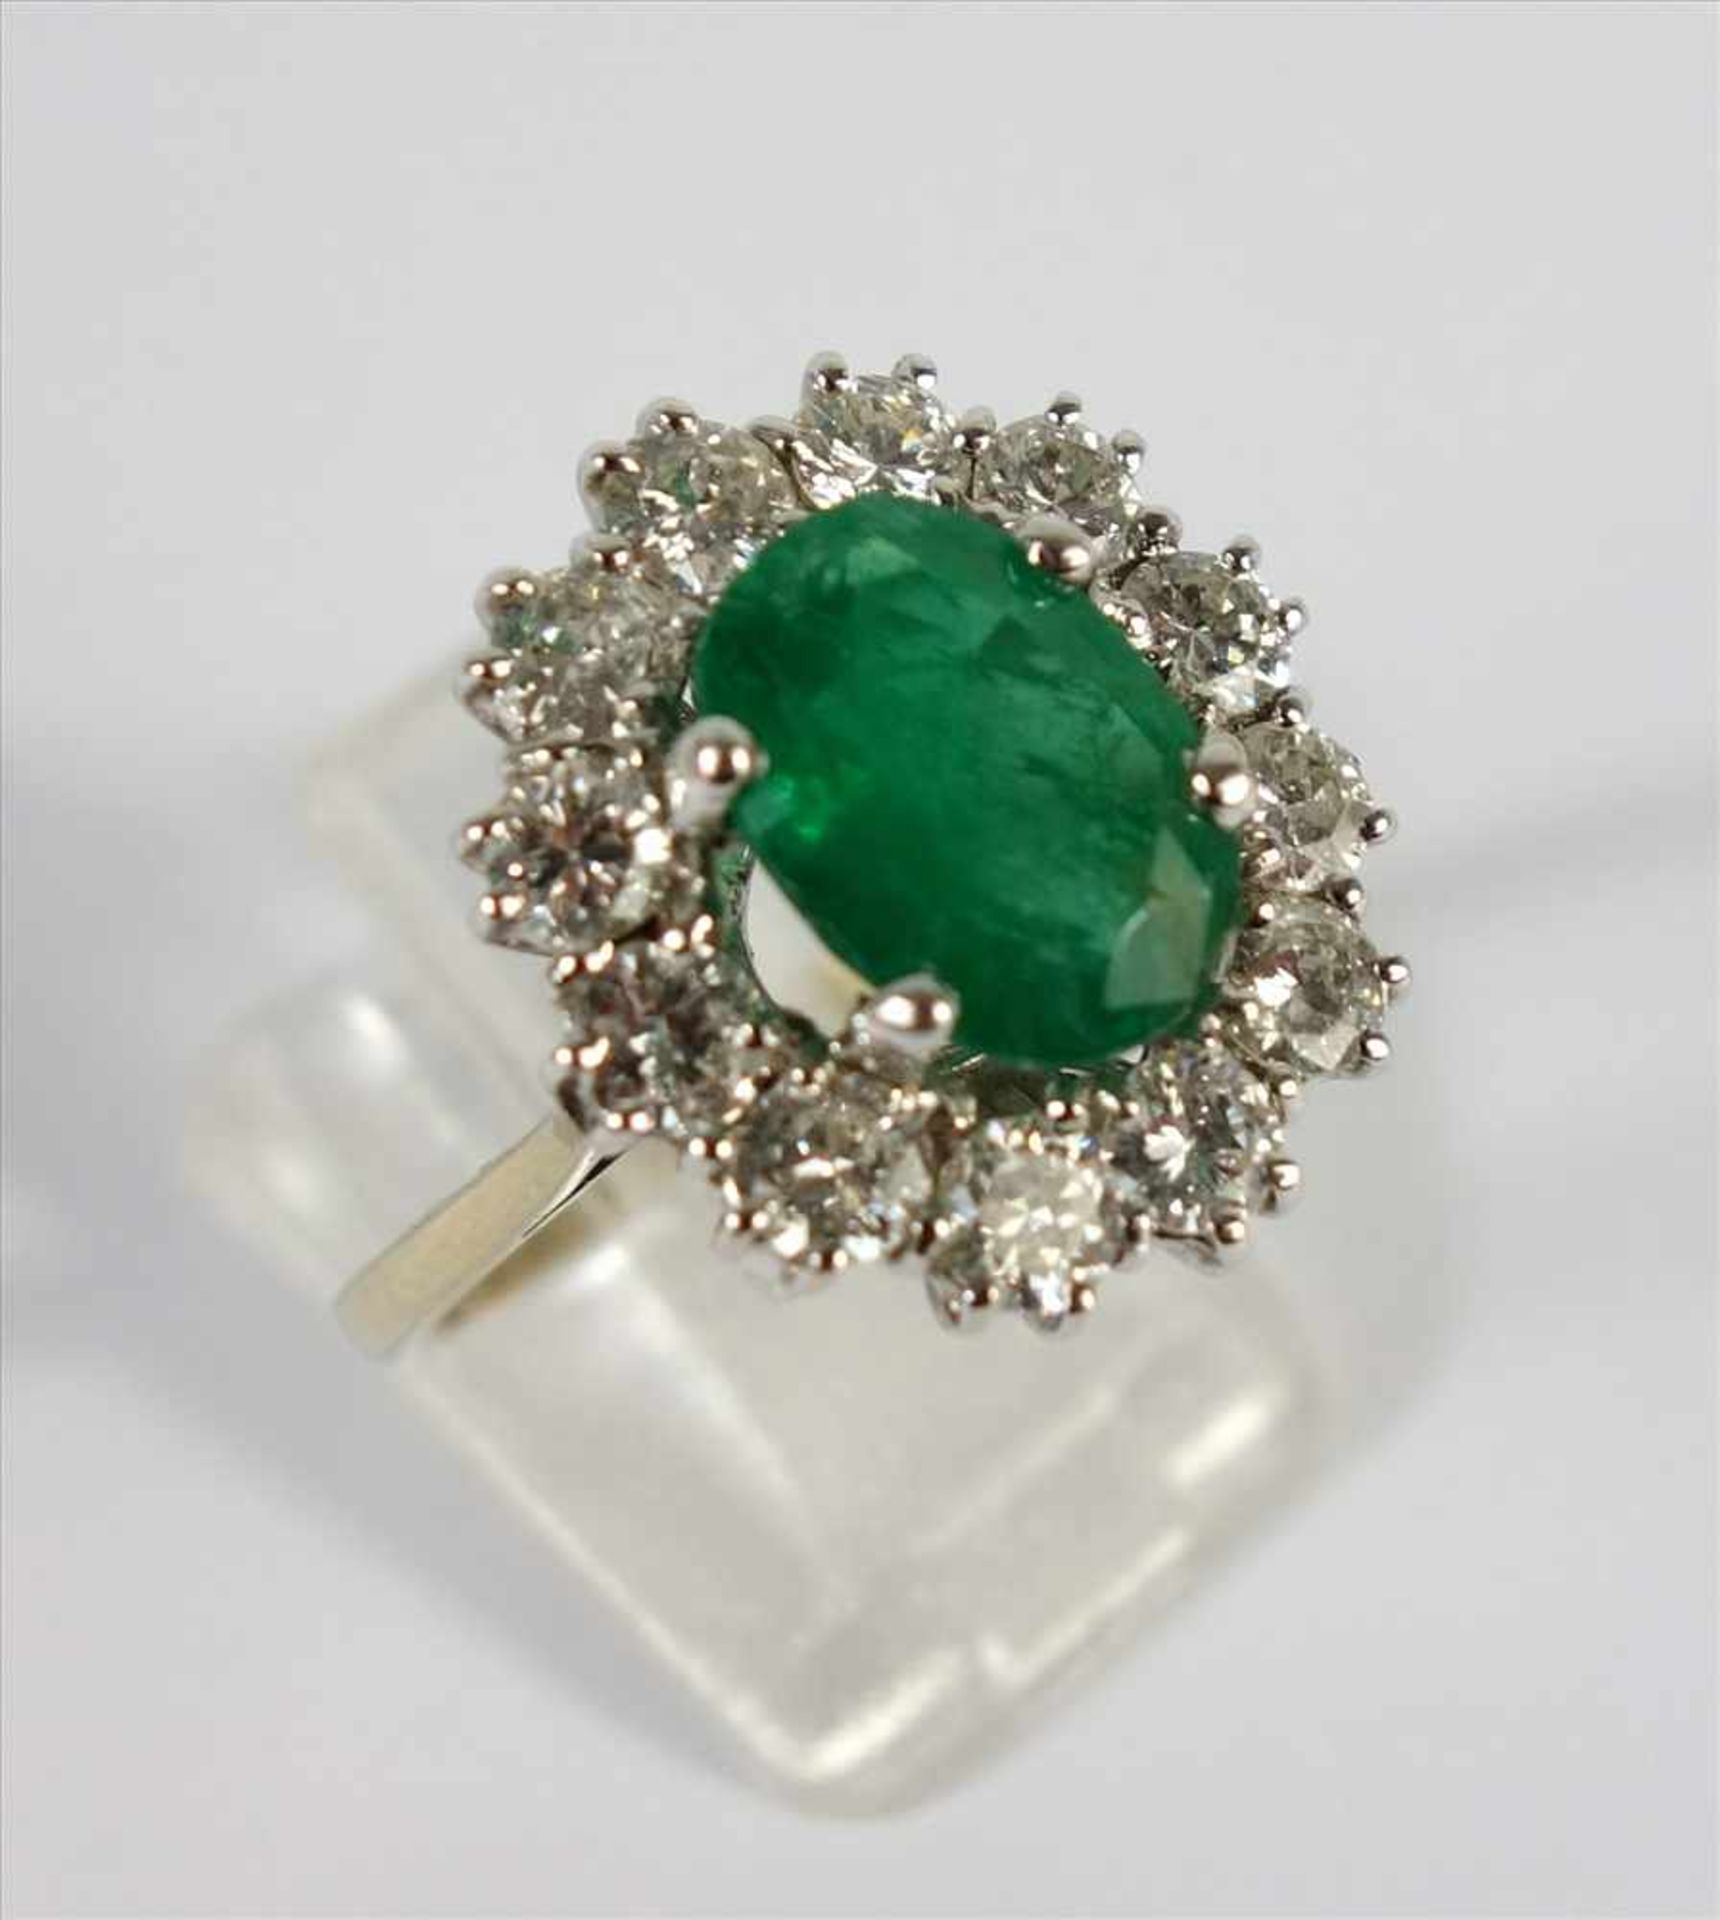 Smaragd-Dia.-Brillant-Ring, 750er Gold, Gew.6,56g, ovaler, facettierter Smaragd, leicht getrübt (